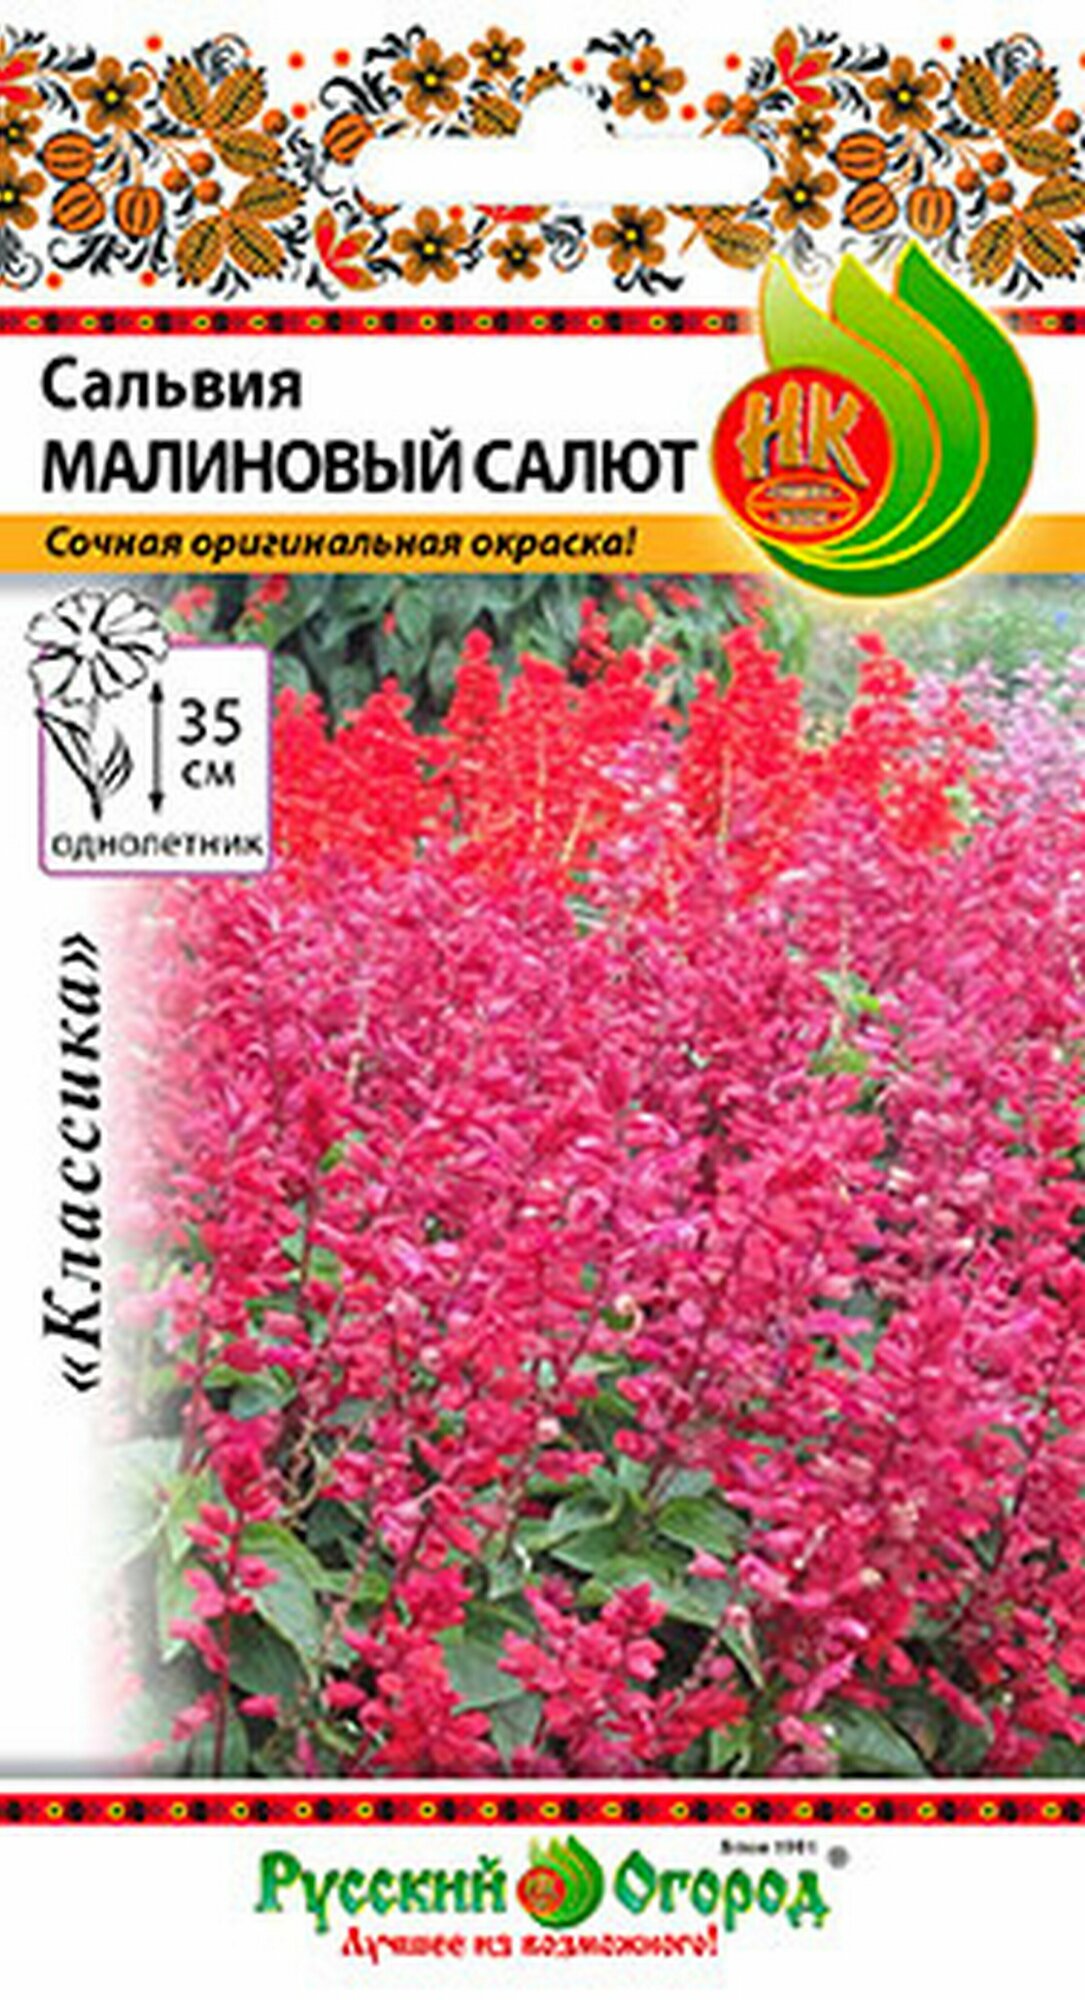 Семена Сальвия Малиновый Салют 10 штук семян Русский Огород